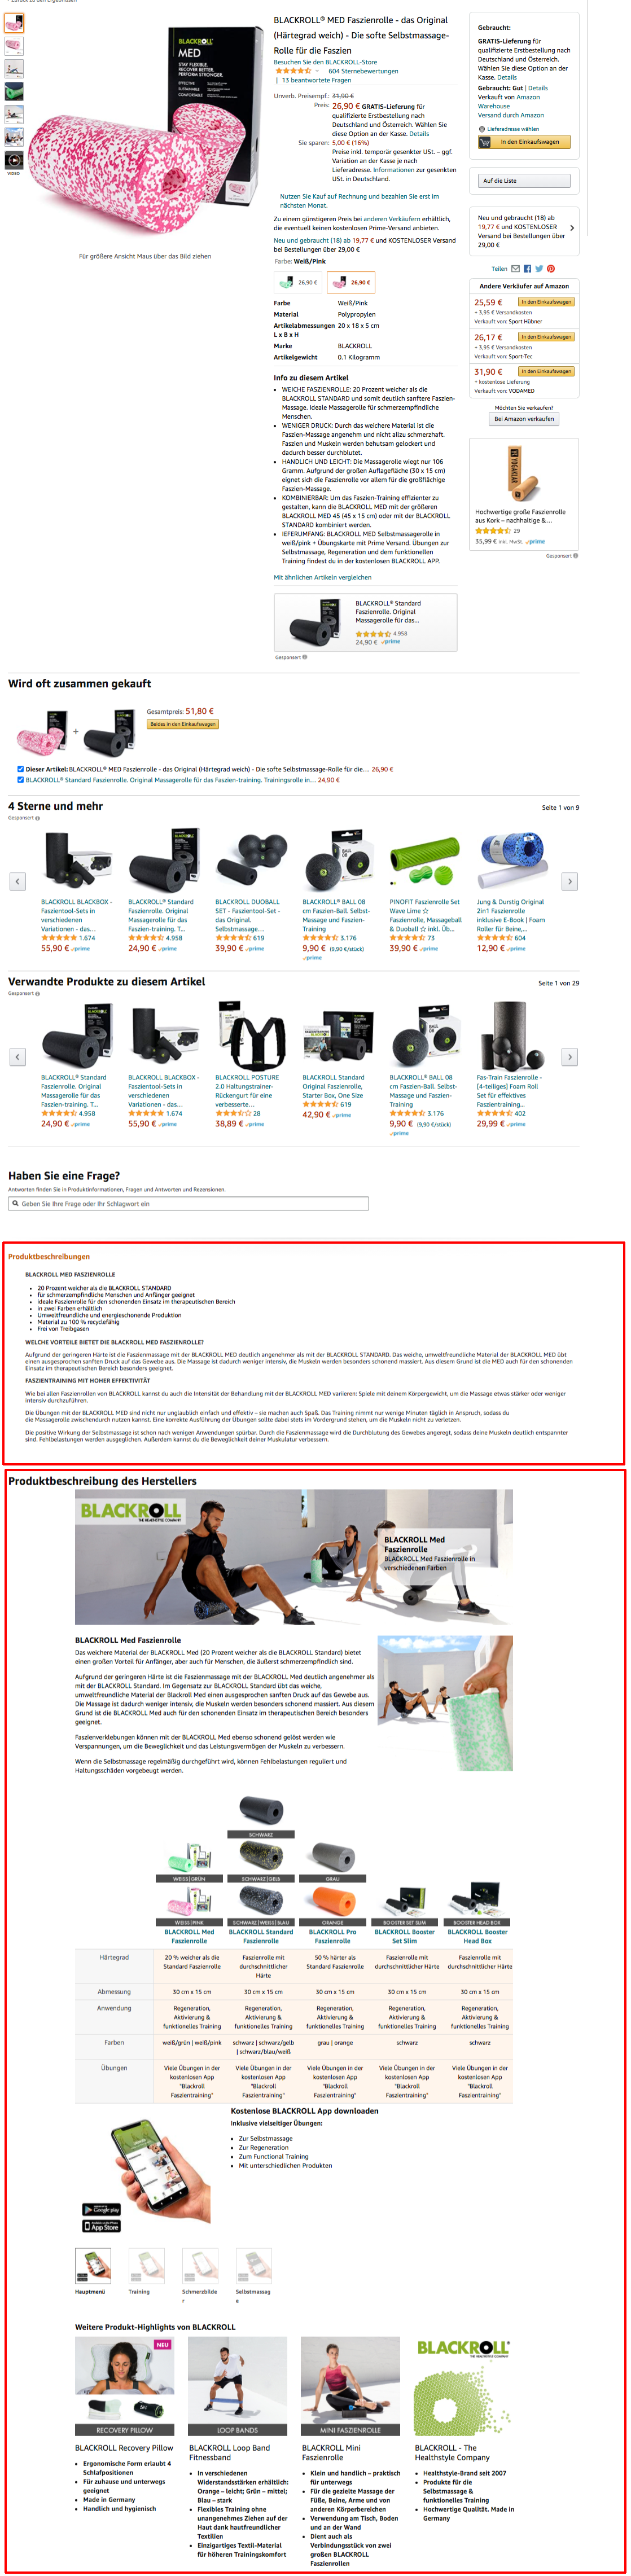 Amazon Produktbeschreibung: Beispiel Vendor Produkt mit Produktbeschreibung und A+Content